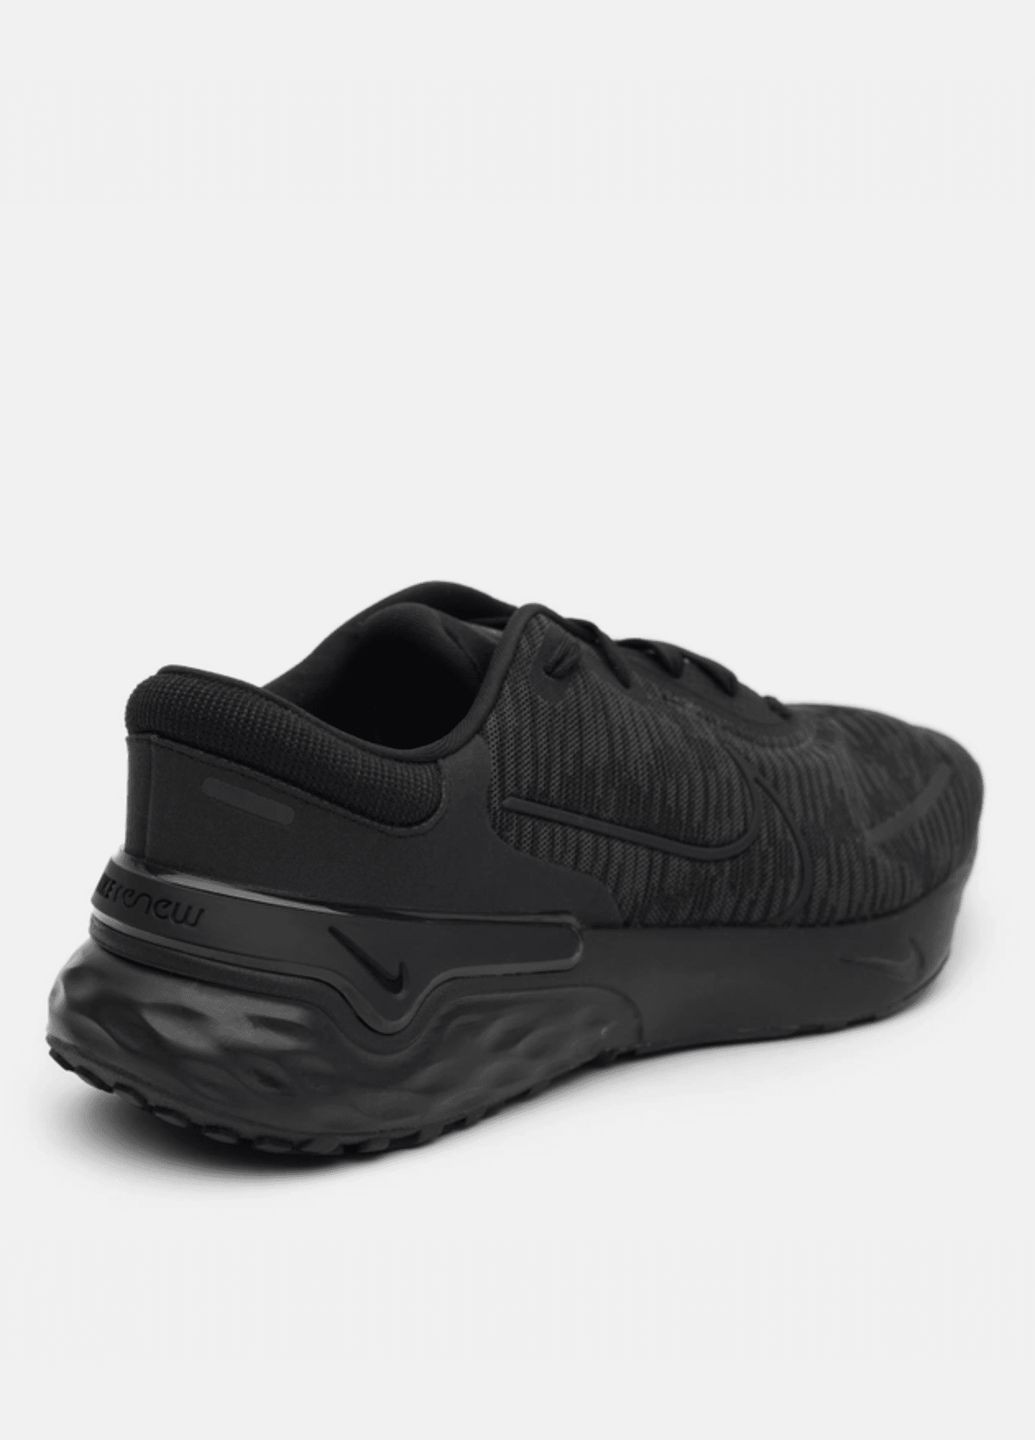 Чорні всесезон кросівки чоловічі renew run 4 dr2677-001 літо текстиль сітка чорні Nike